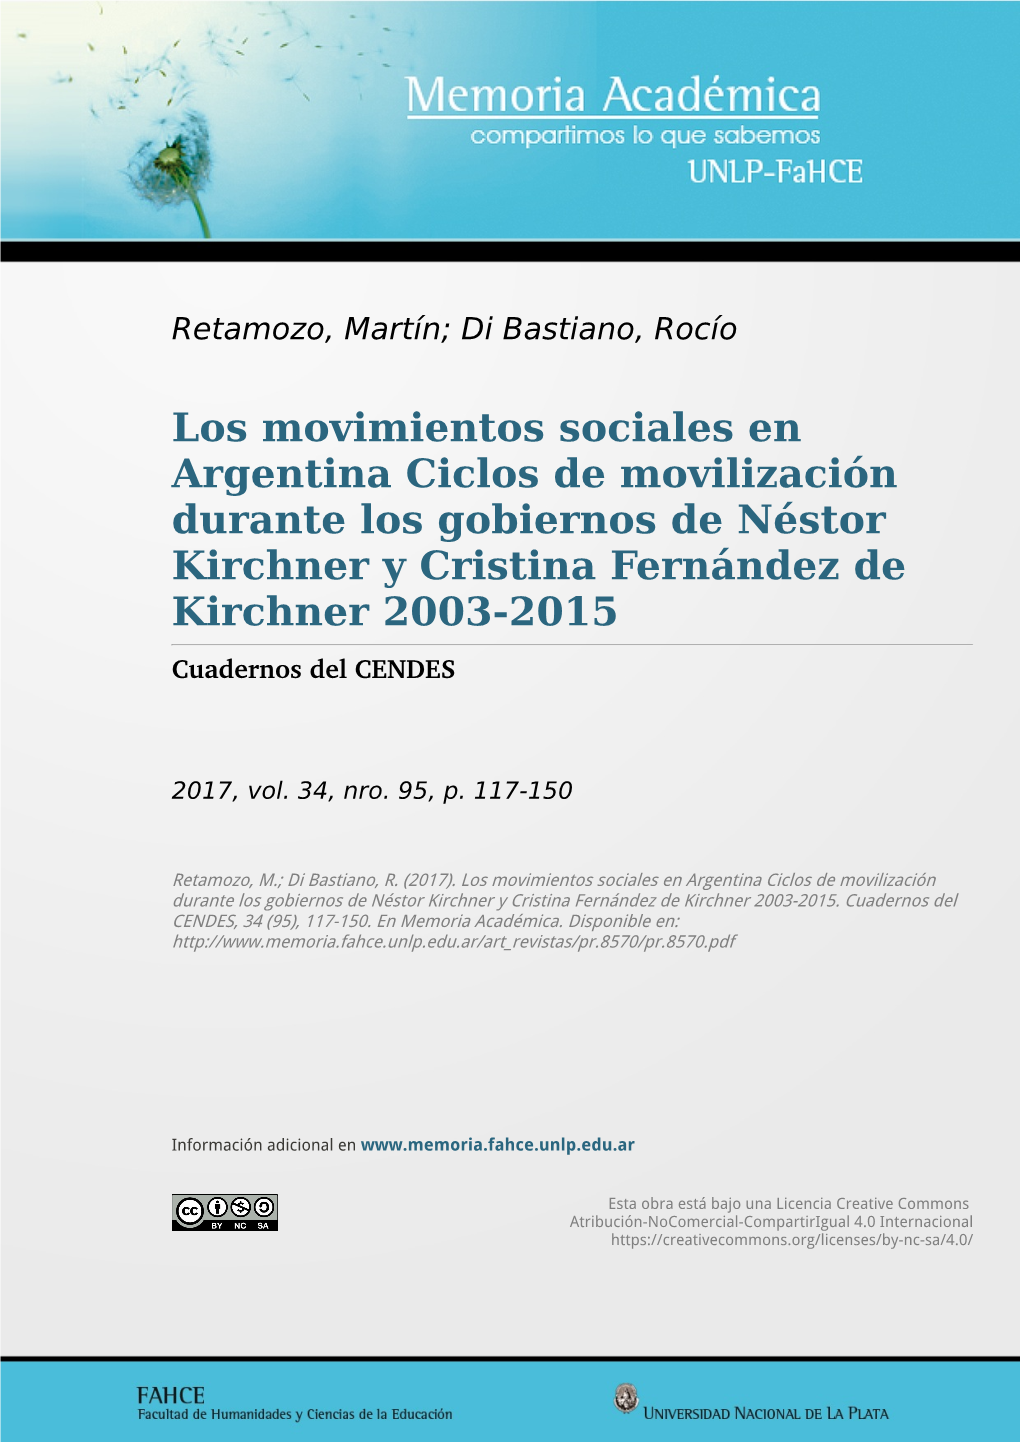 Los Movimientos Sociales En Argentina Ciclos De Movilización Durante Los Gobiernos De Néstor Kirchner Y Cristina Fernández De Kirchner 2003-2015 Cuadernos Del CENDES